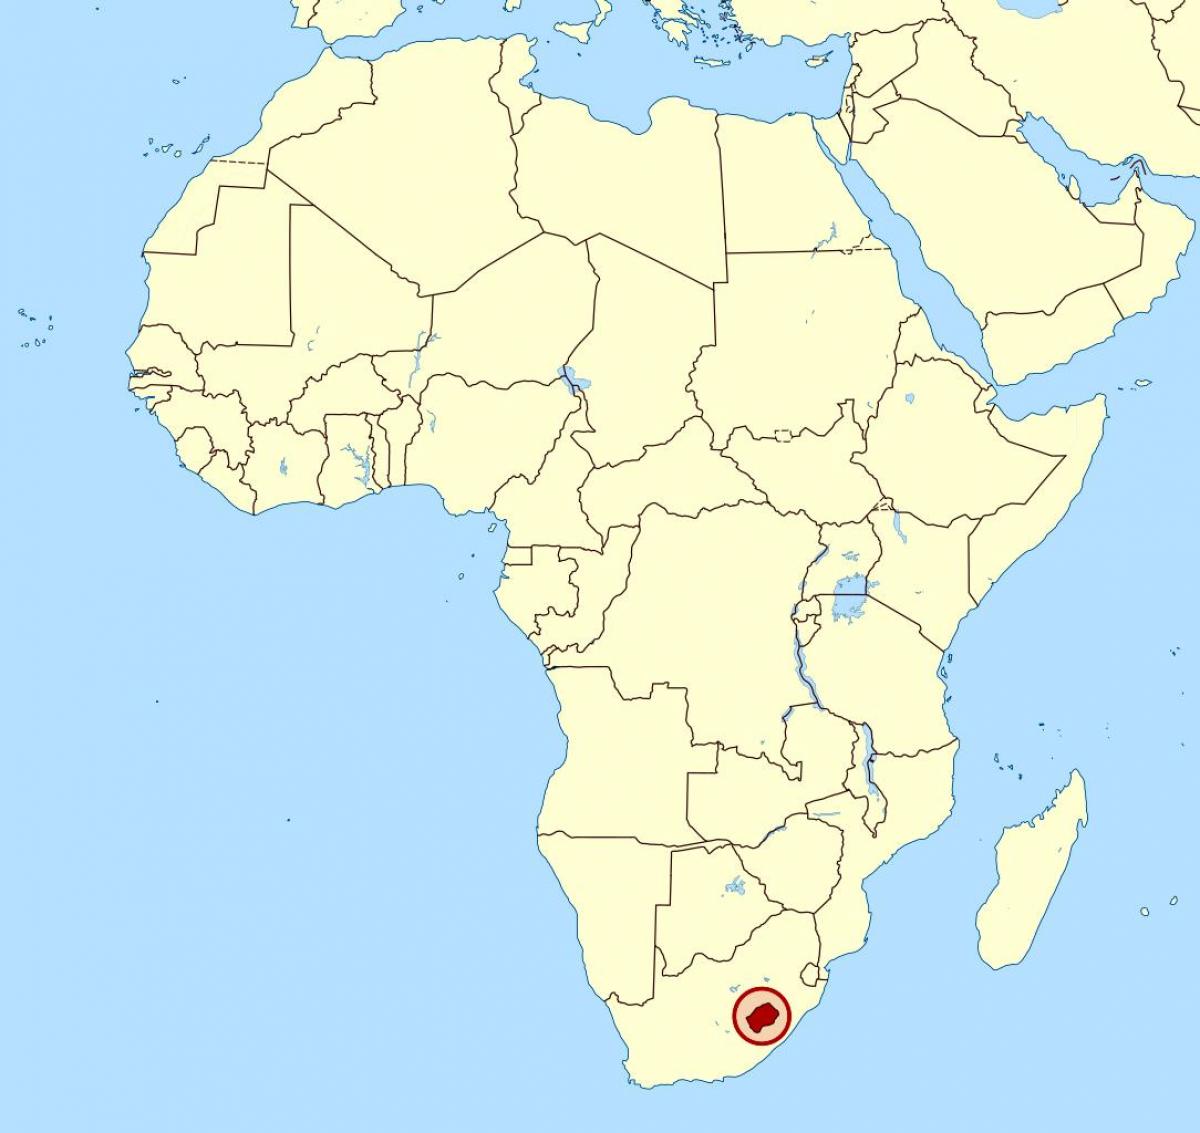 Lesotho di peta afrika